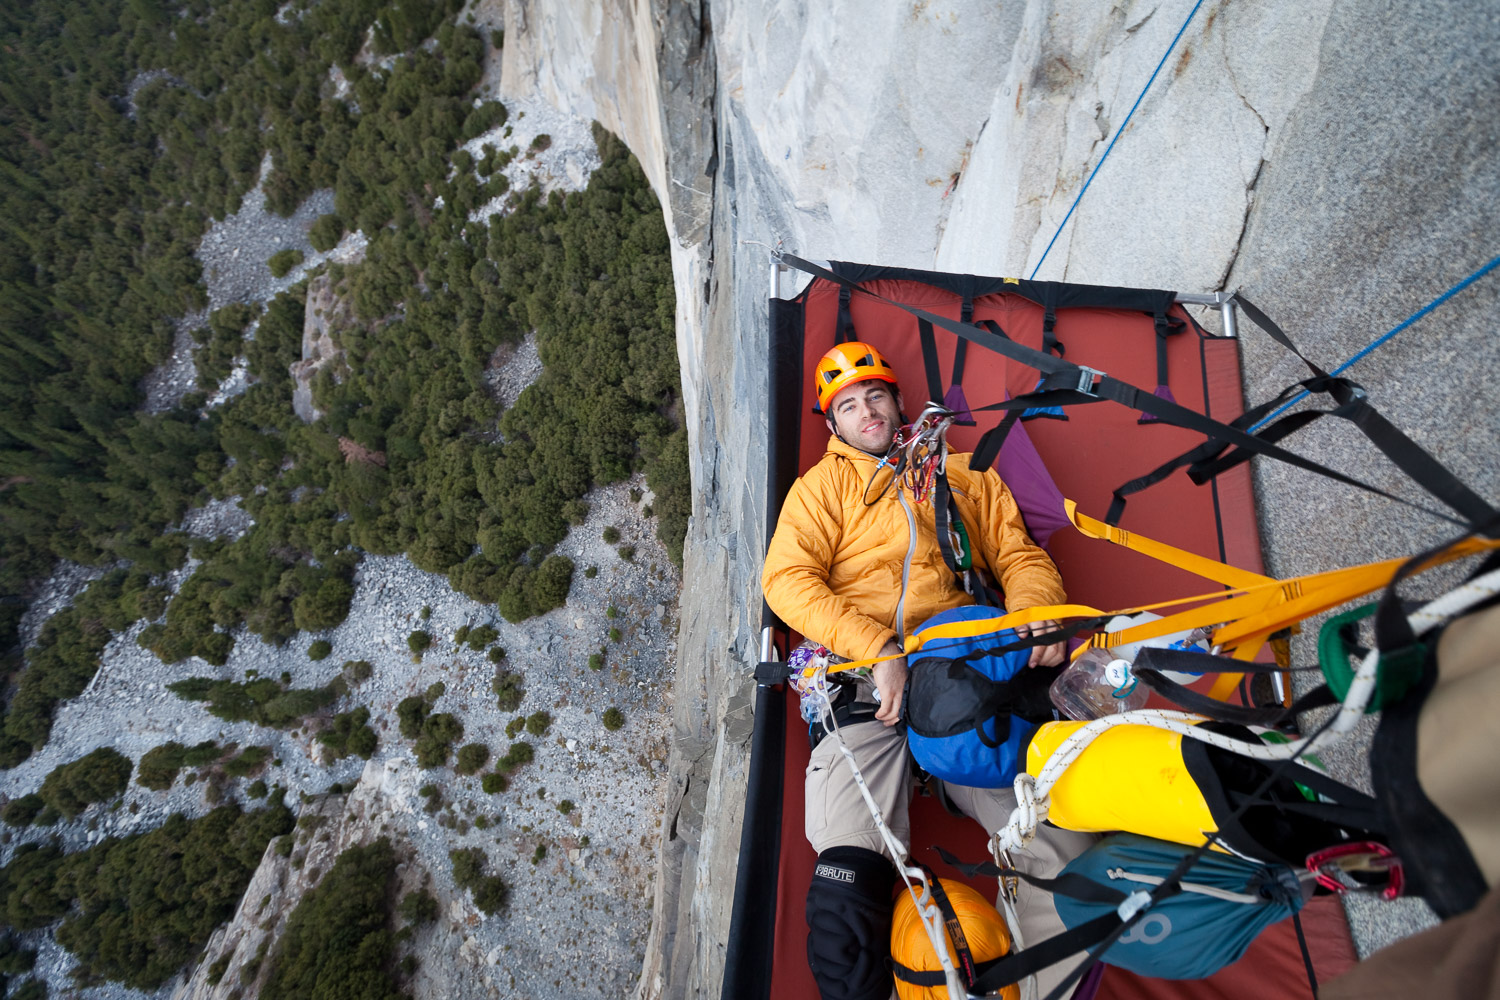 photos of rock climbing yosemite national park californi